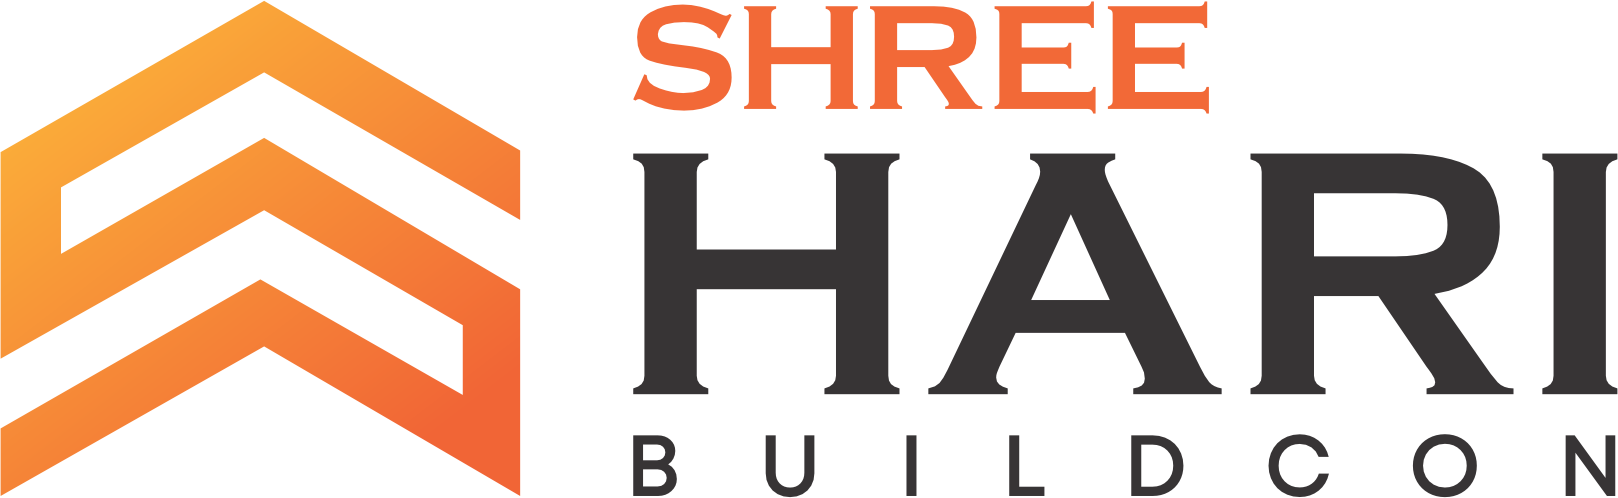 SHREE HARI PVC LAMINATE - Dilip Patel / Nikunj Patel, Digital Business Card  - Localbel